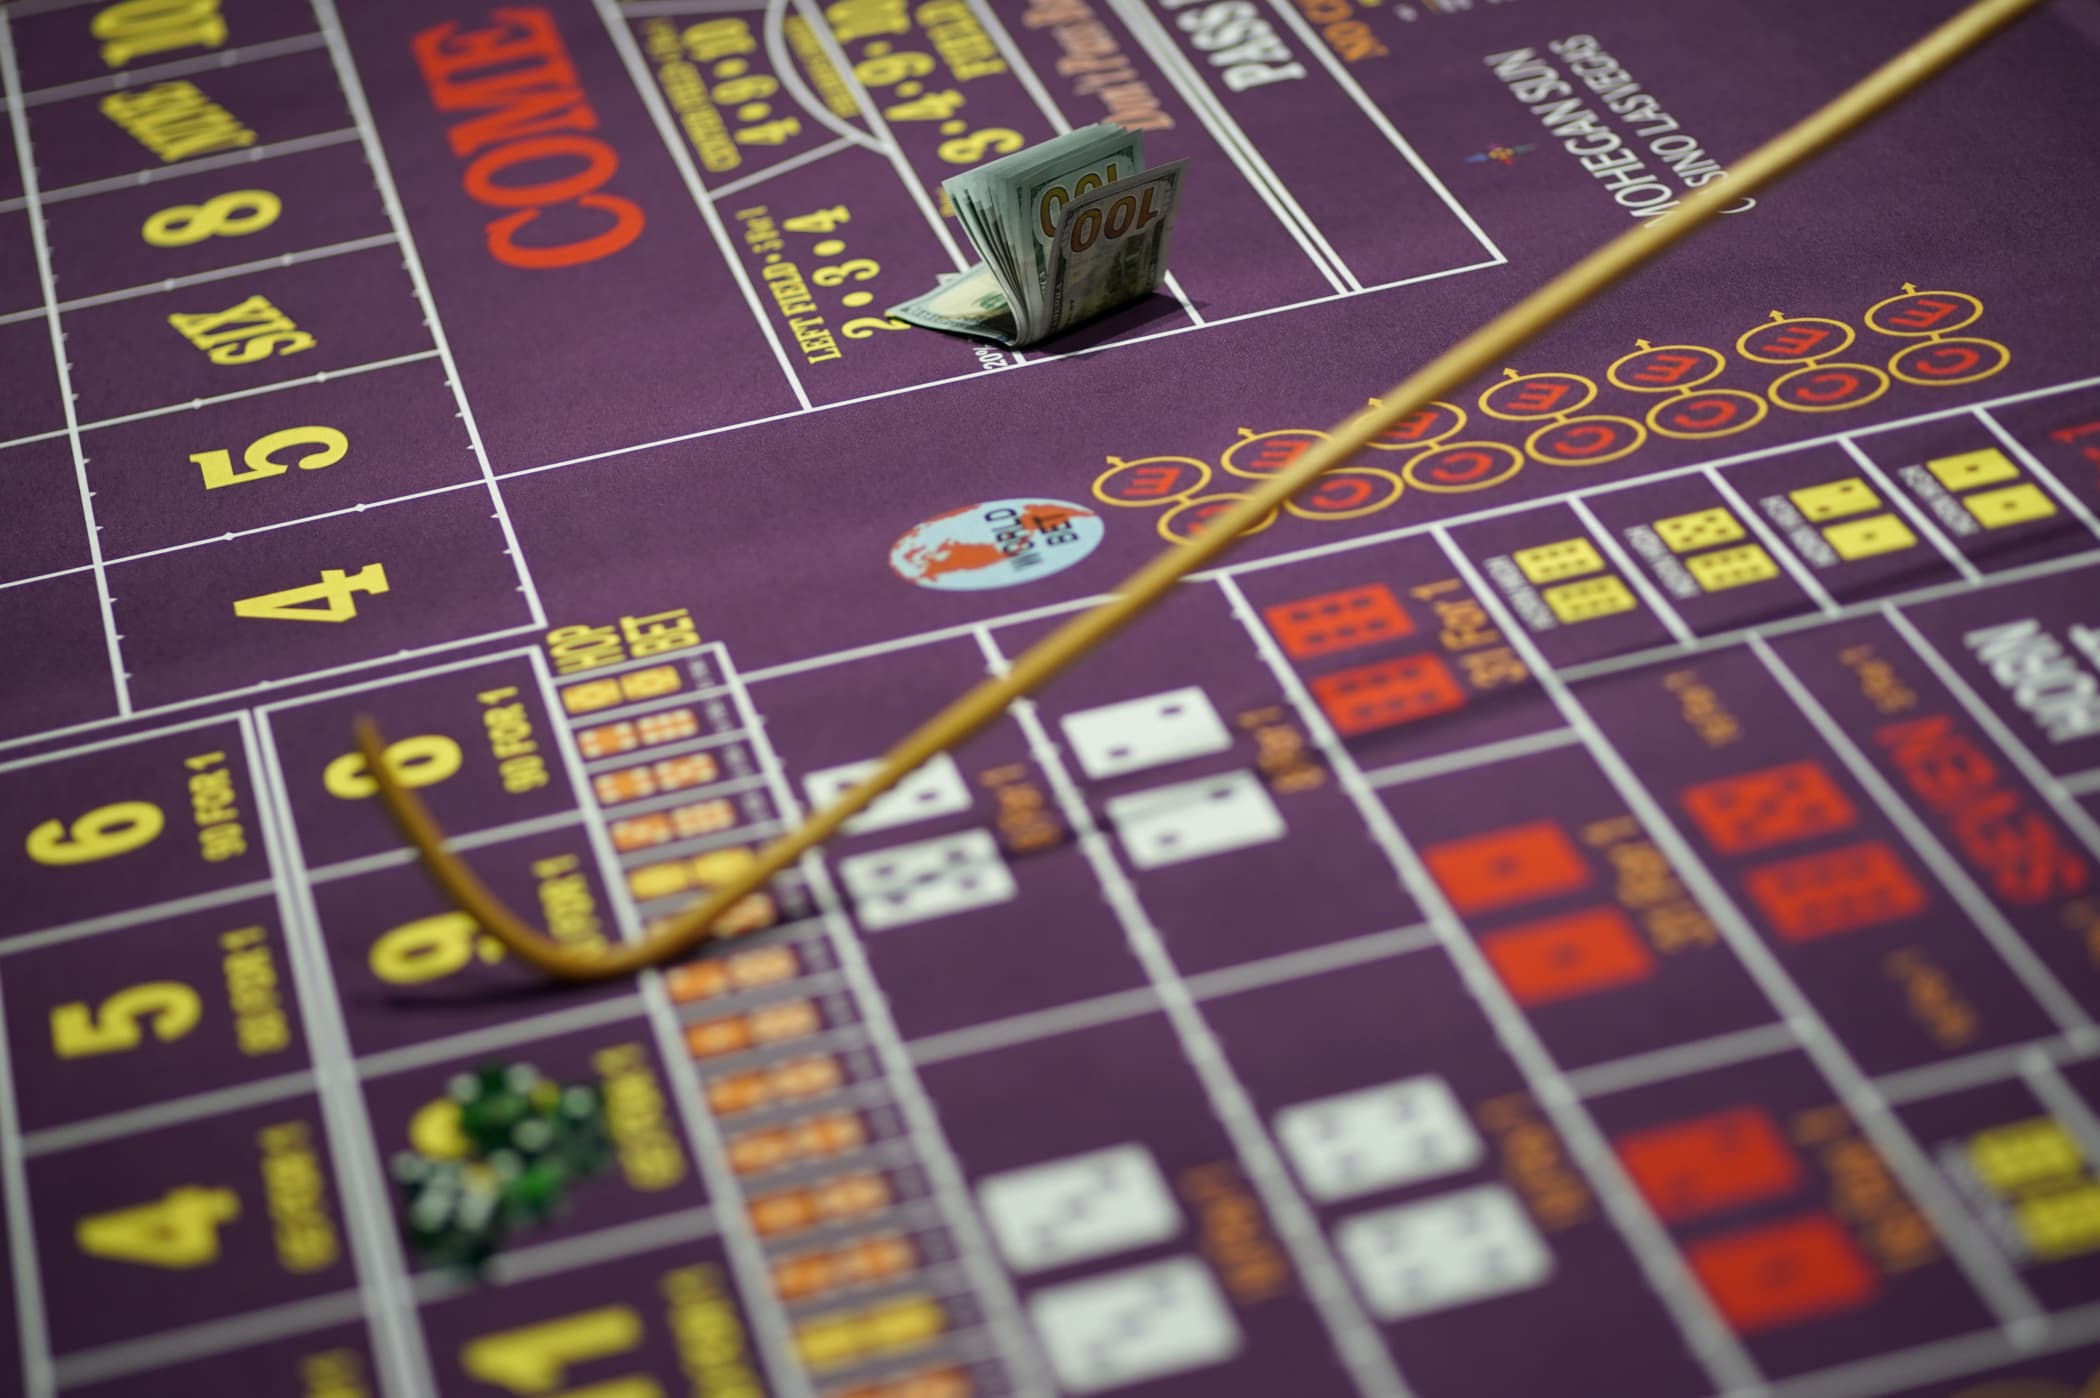 Мошенники азартной игры